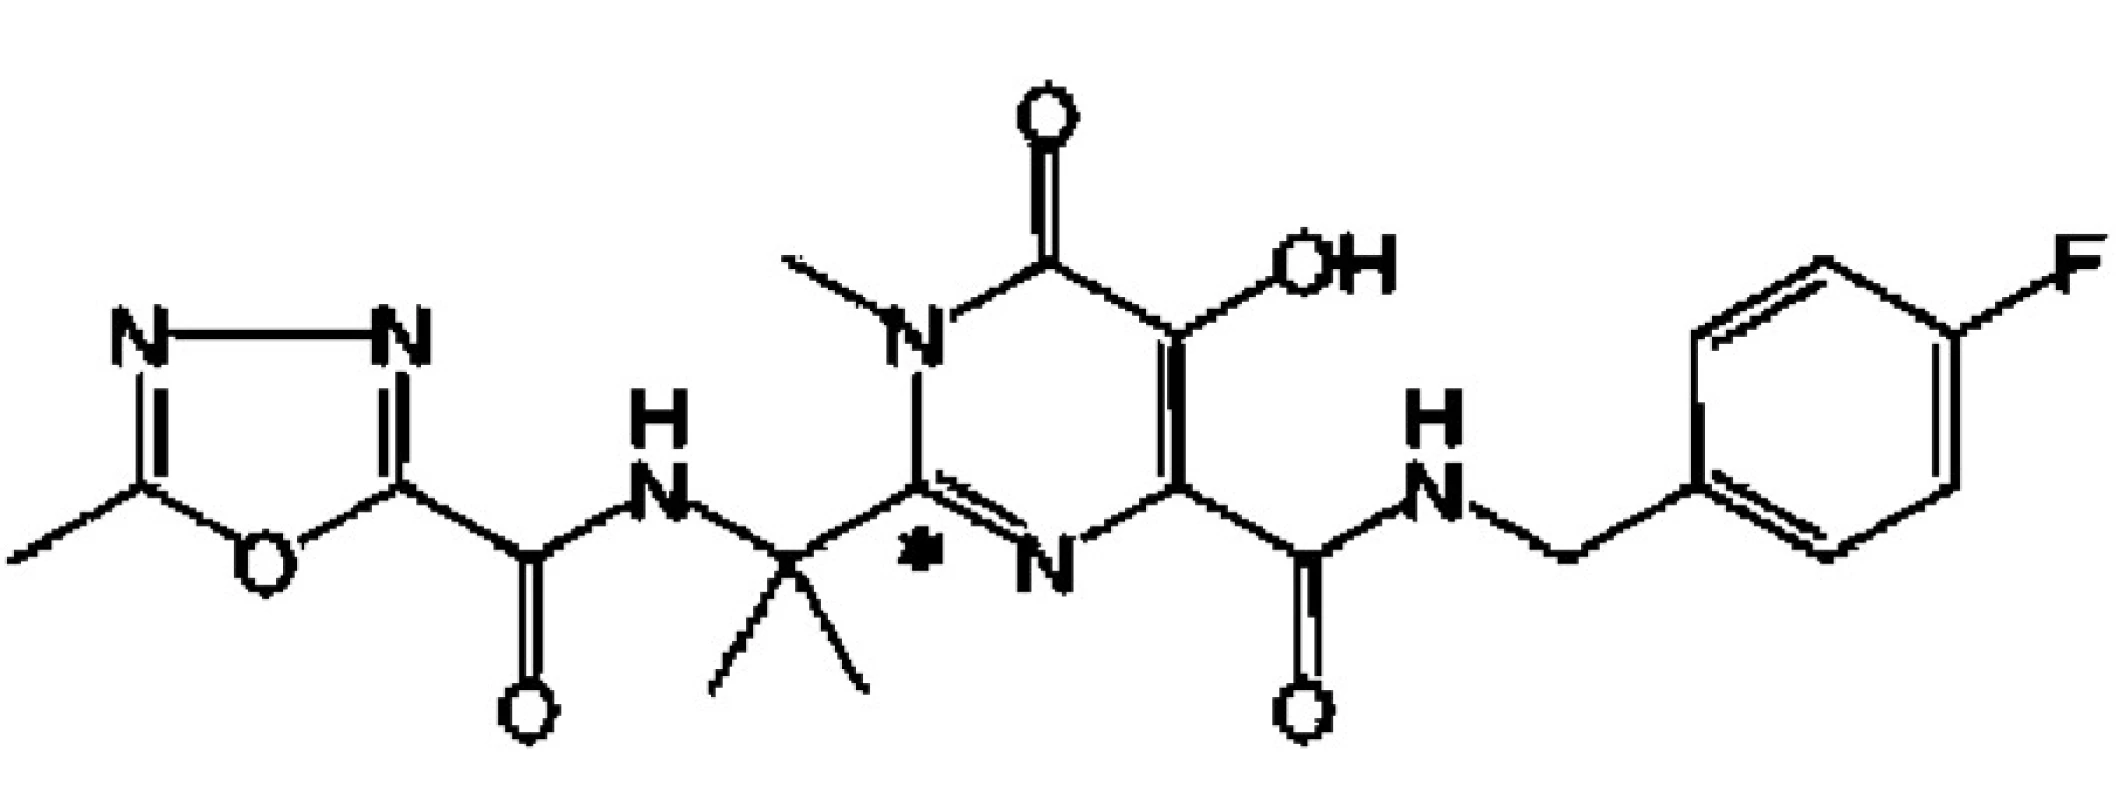 Chemický vzorec raltegraviru (hydroxypyrimidinon karboxamidu)